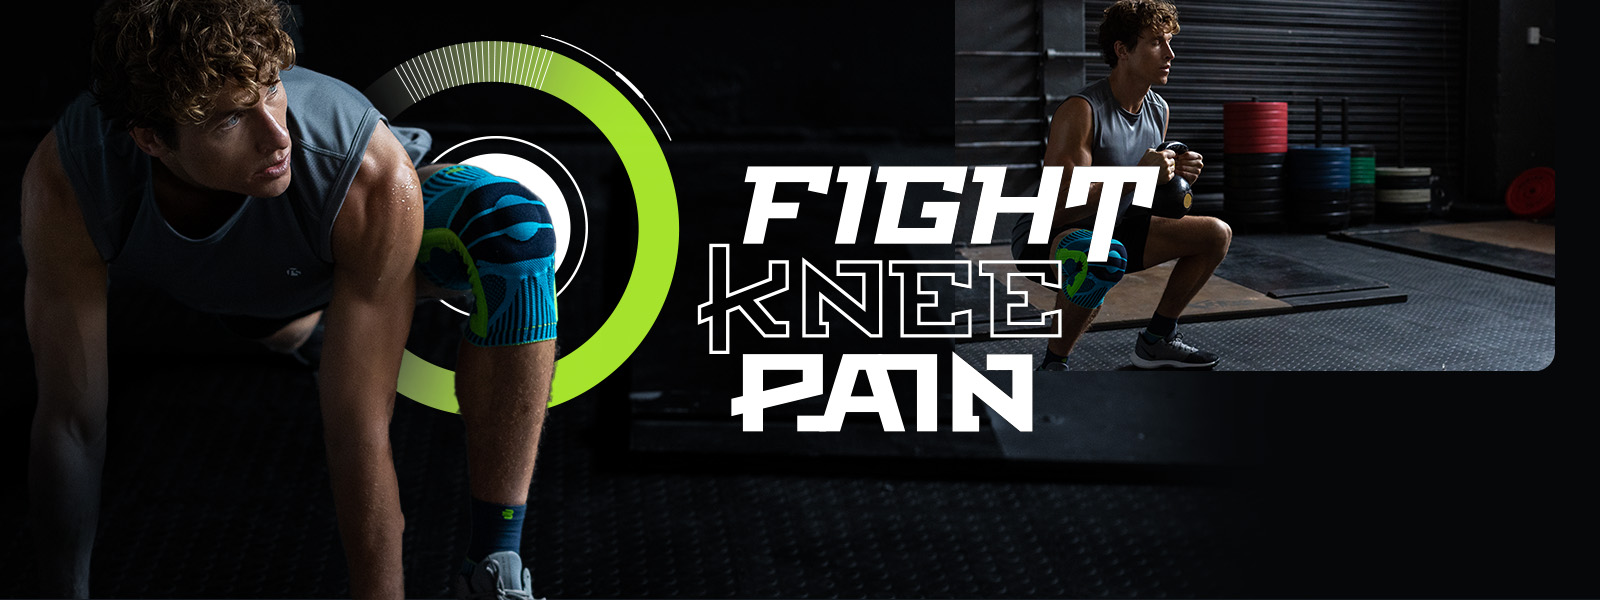 Fight Knee Pain Promo banner mit einem Mann, welcher Fitnessübungen macht bei denen er eine Kniebandage trägt